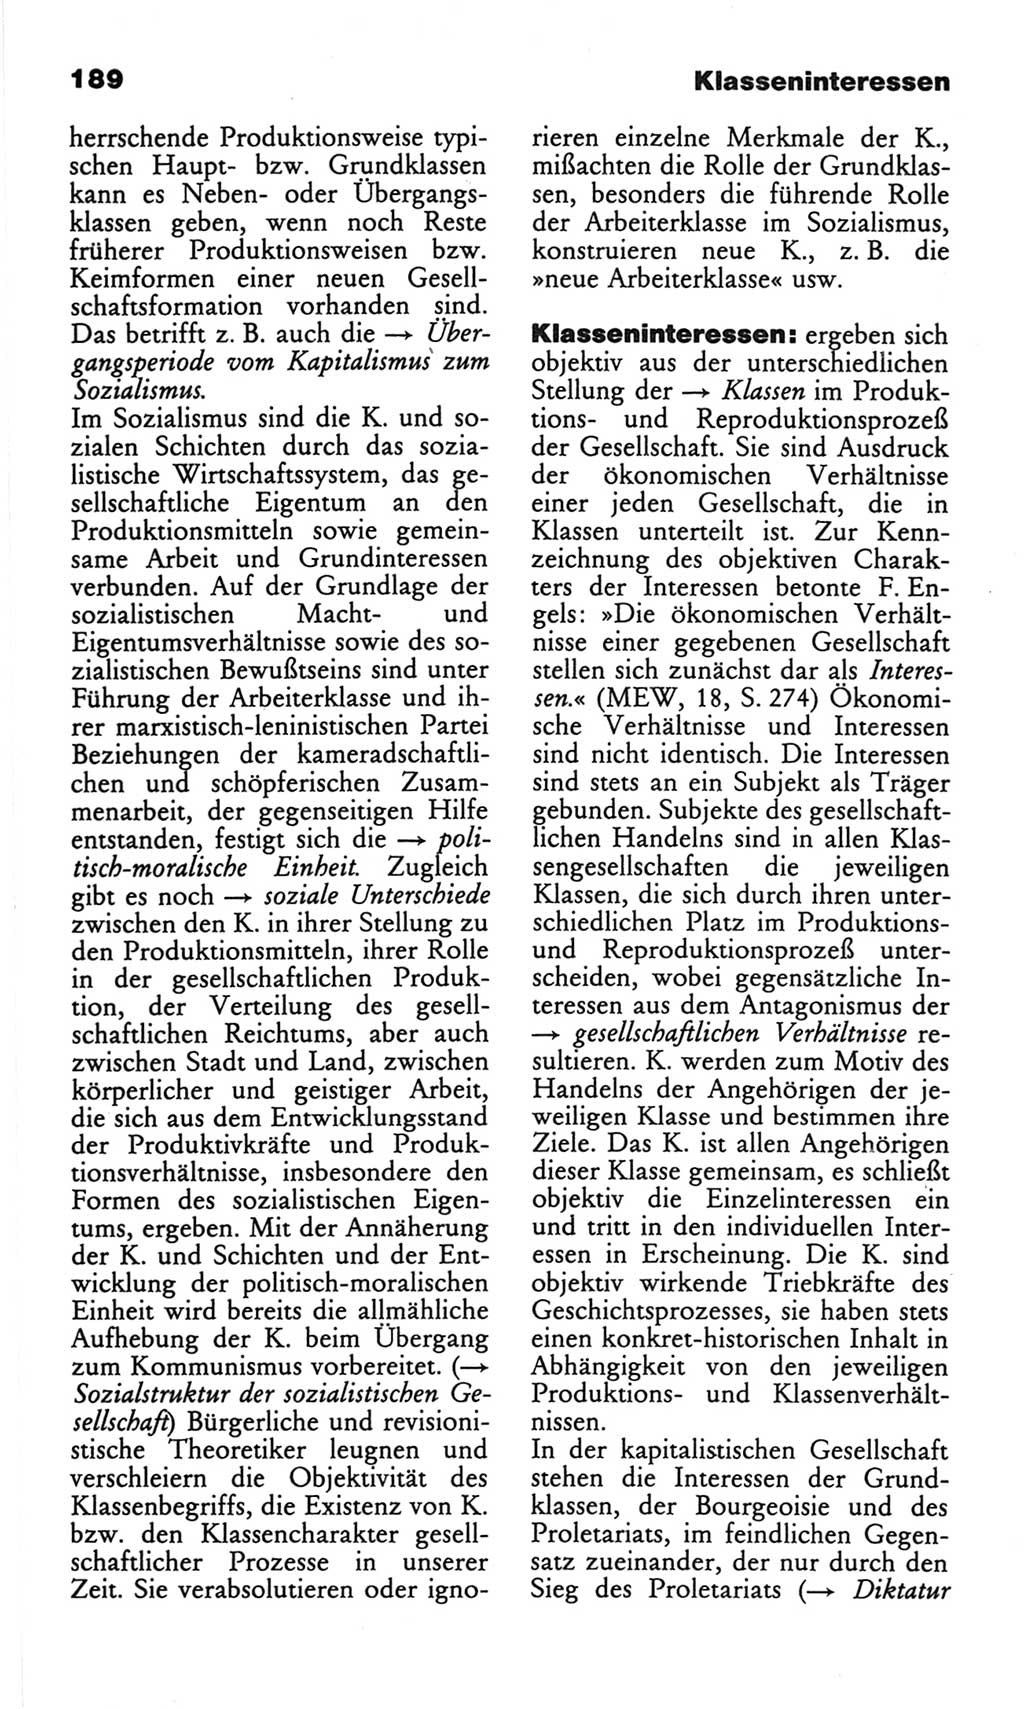 Wörterbuch des wissenschaftlichen Kommunismus [Deutsche Demokratische Republik (DDR)] 1982, Seite 189 (Wb. wiss. Komm. DDR 1982, S. 189)